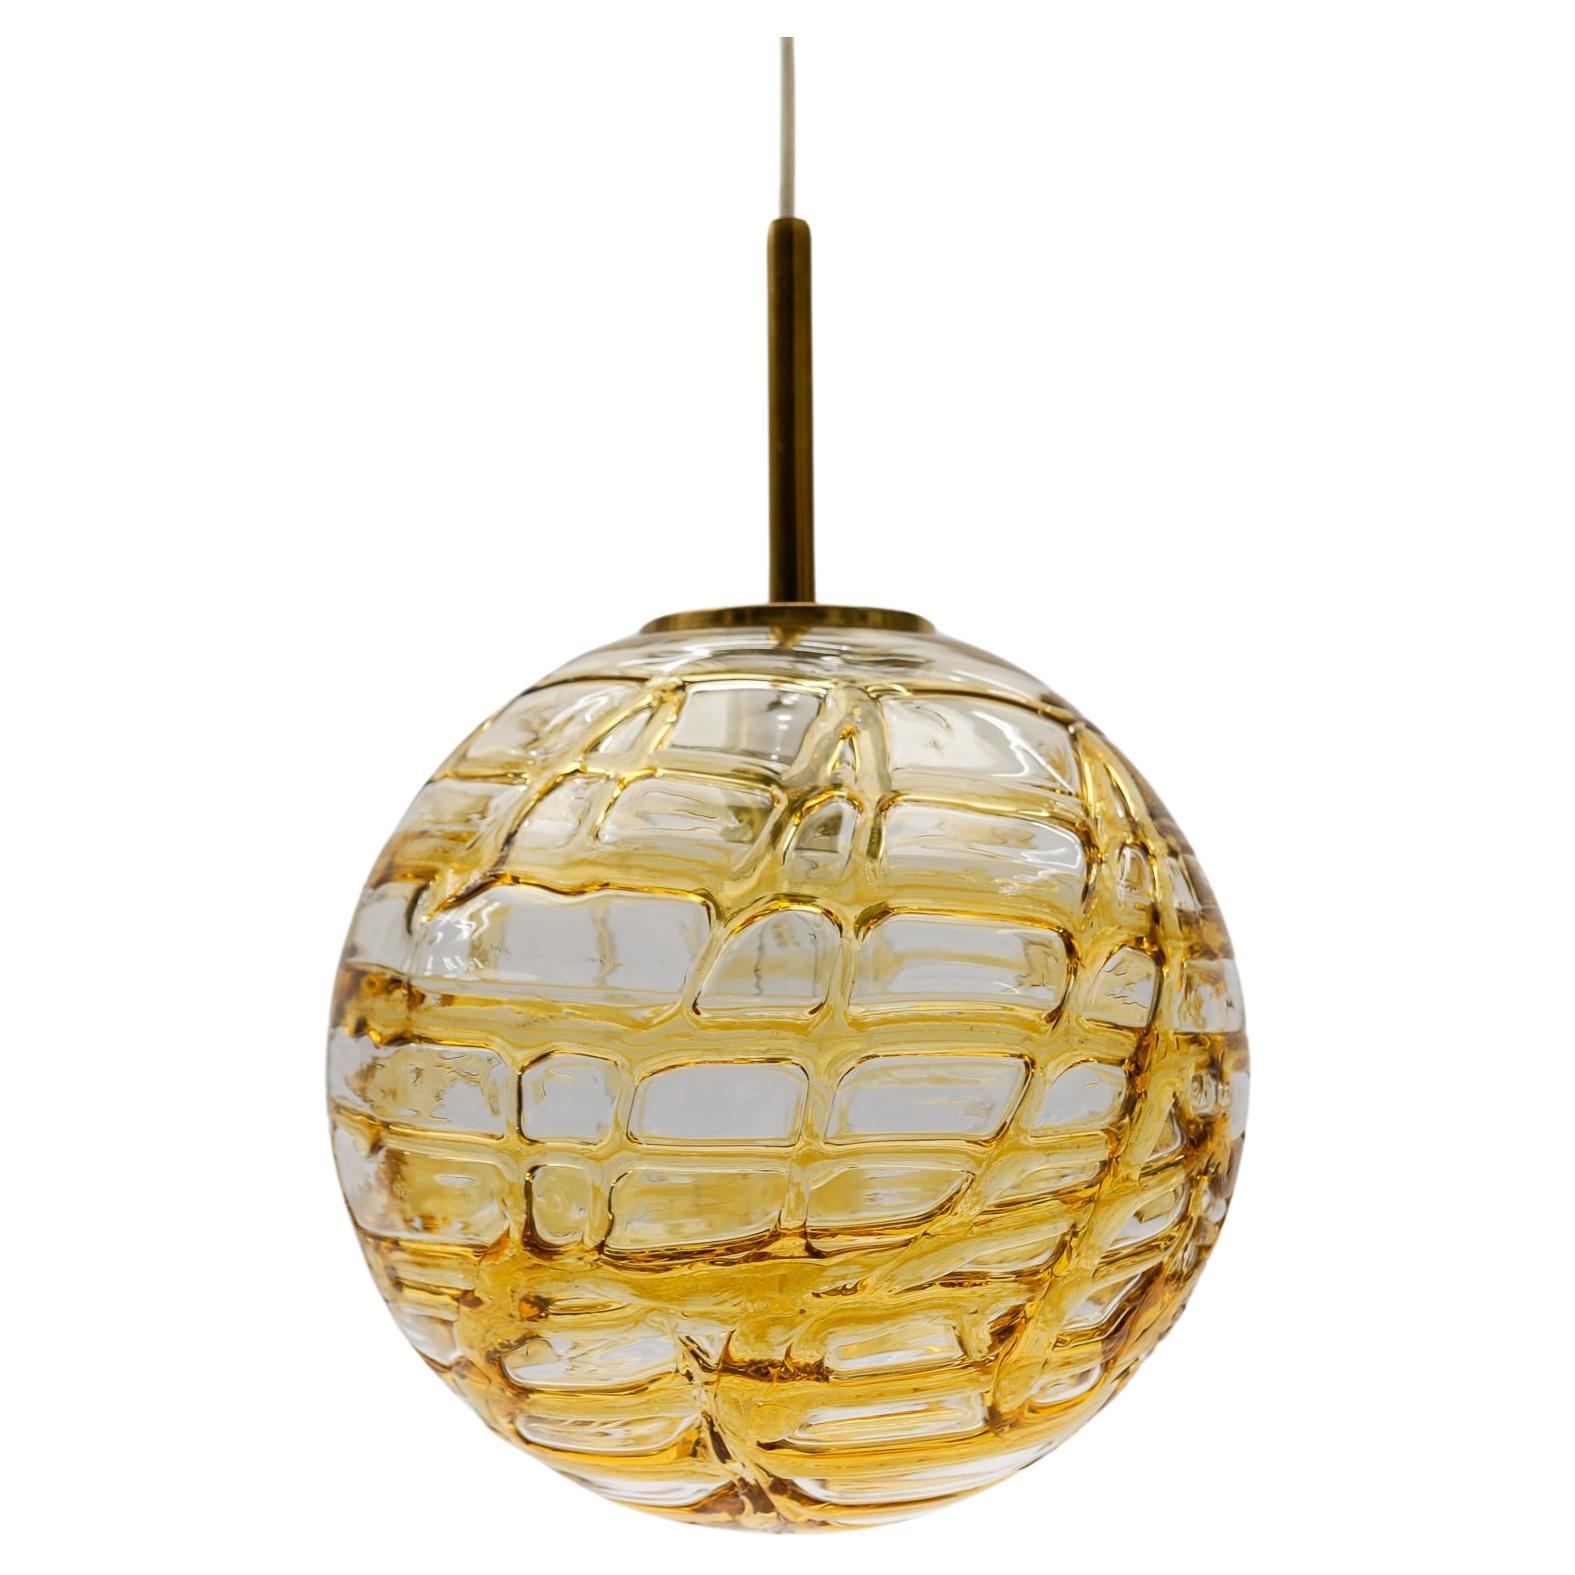 Hübsche gelbe Murano Glas Kugel Pendelleuchte von Doria, - 1960er Jahre Deutschland